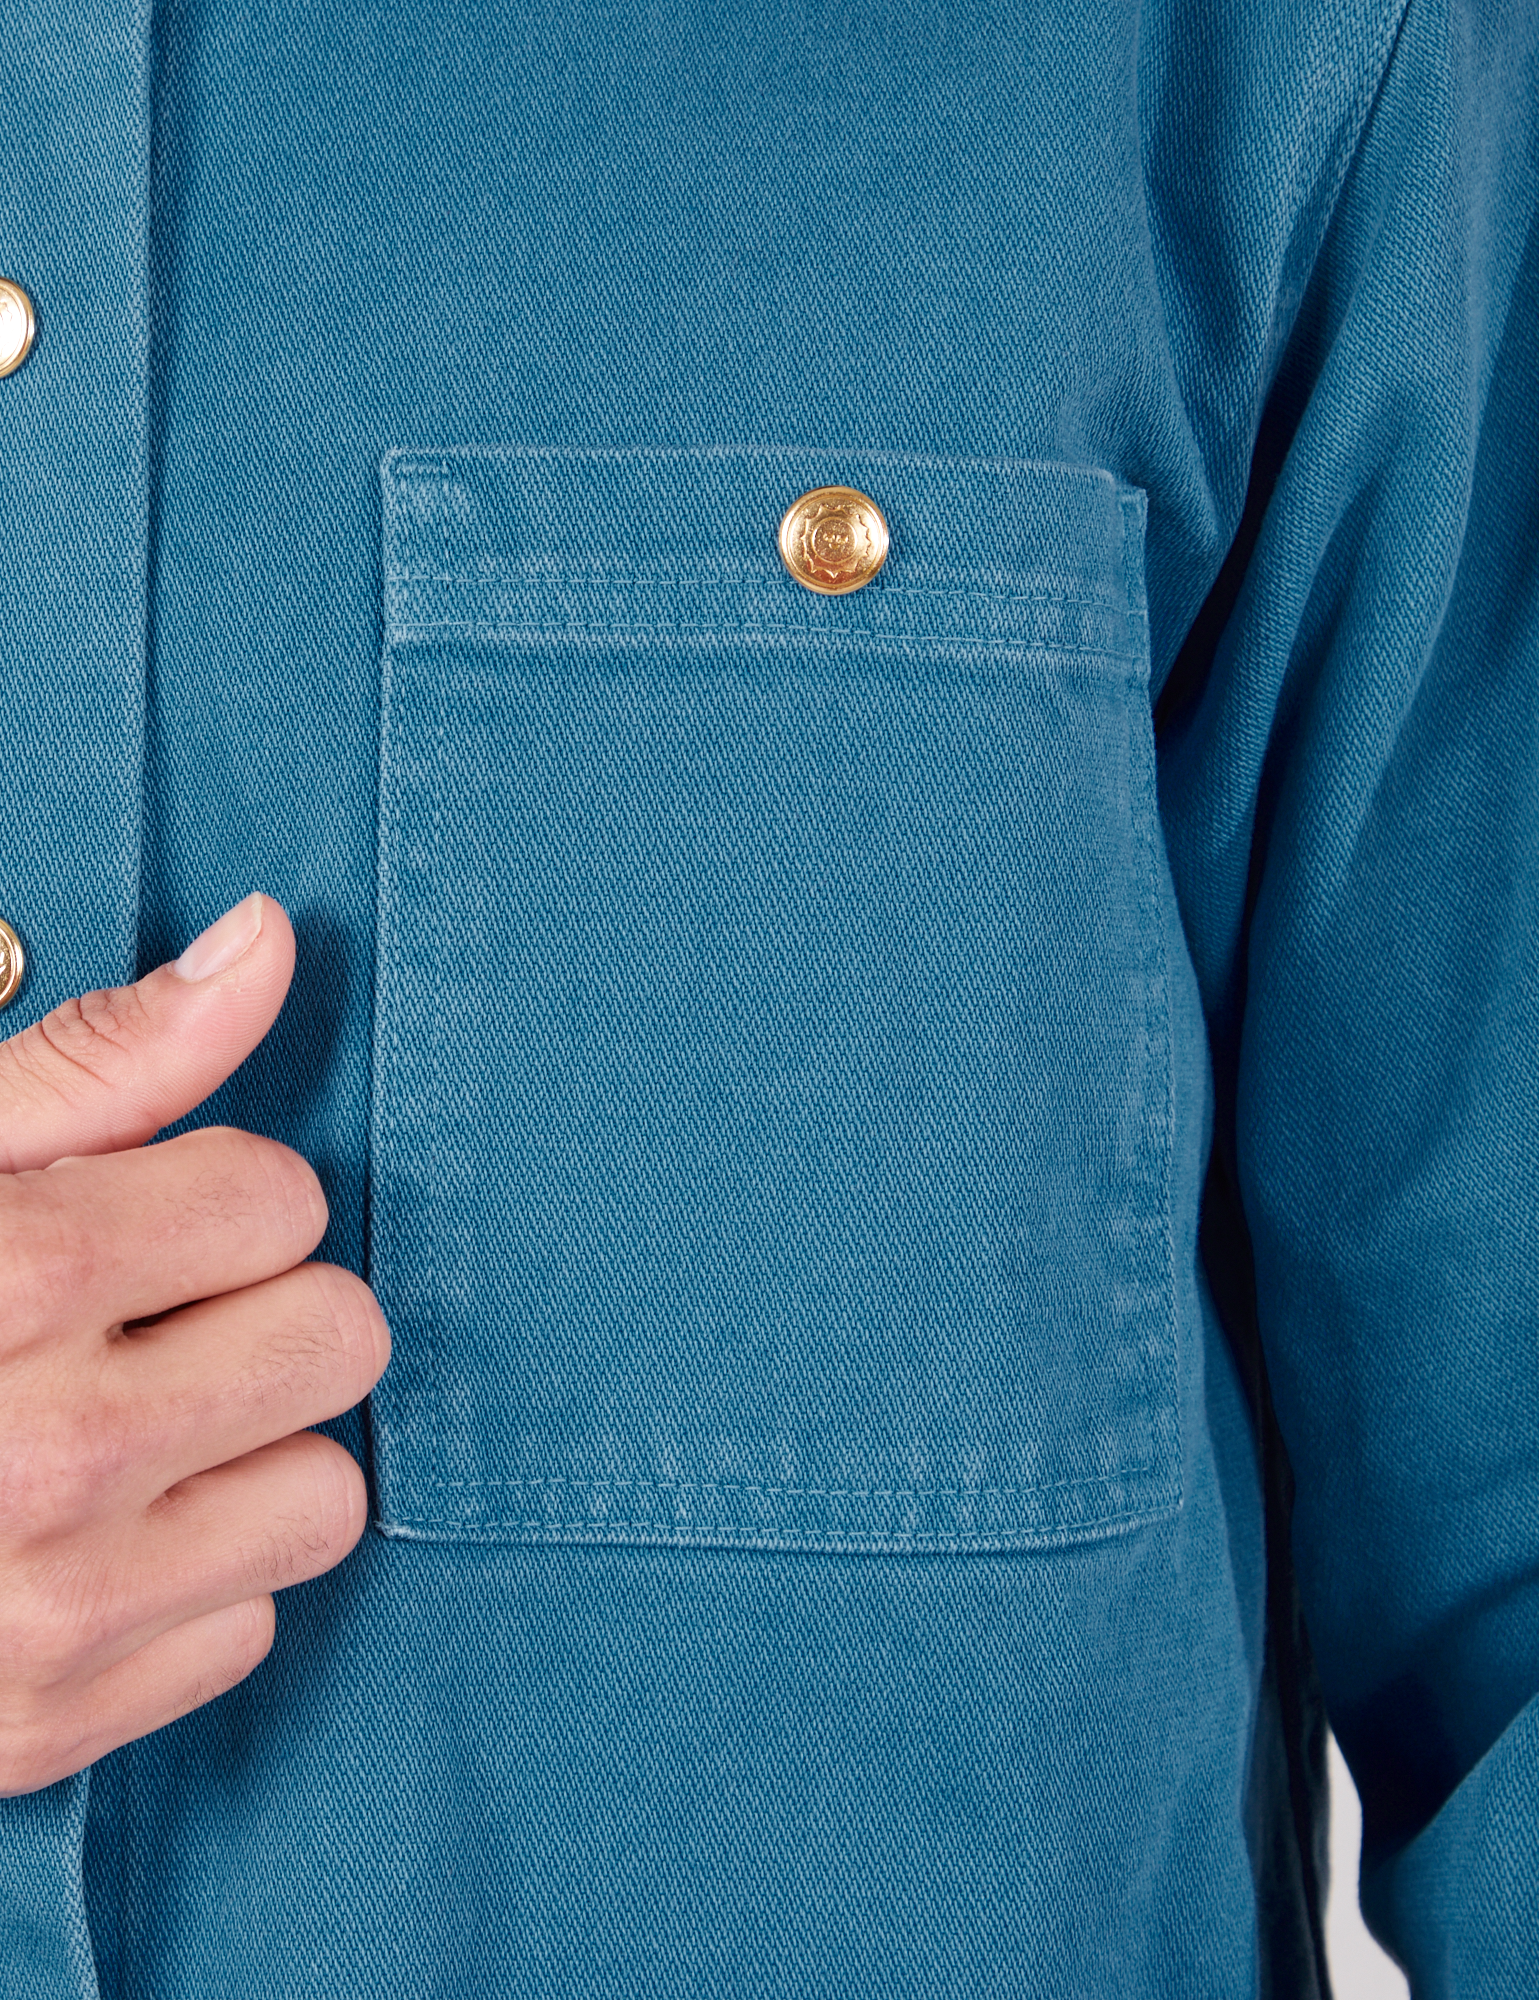 Denim Work Jacket in Marine Blue front pocket close up